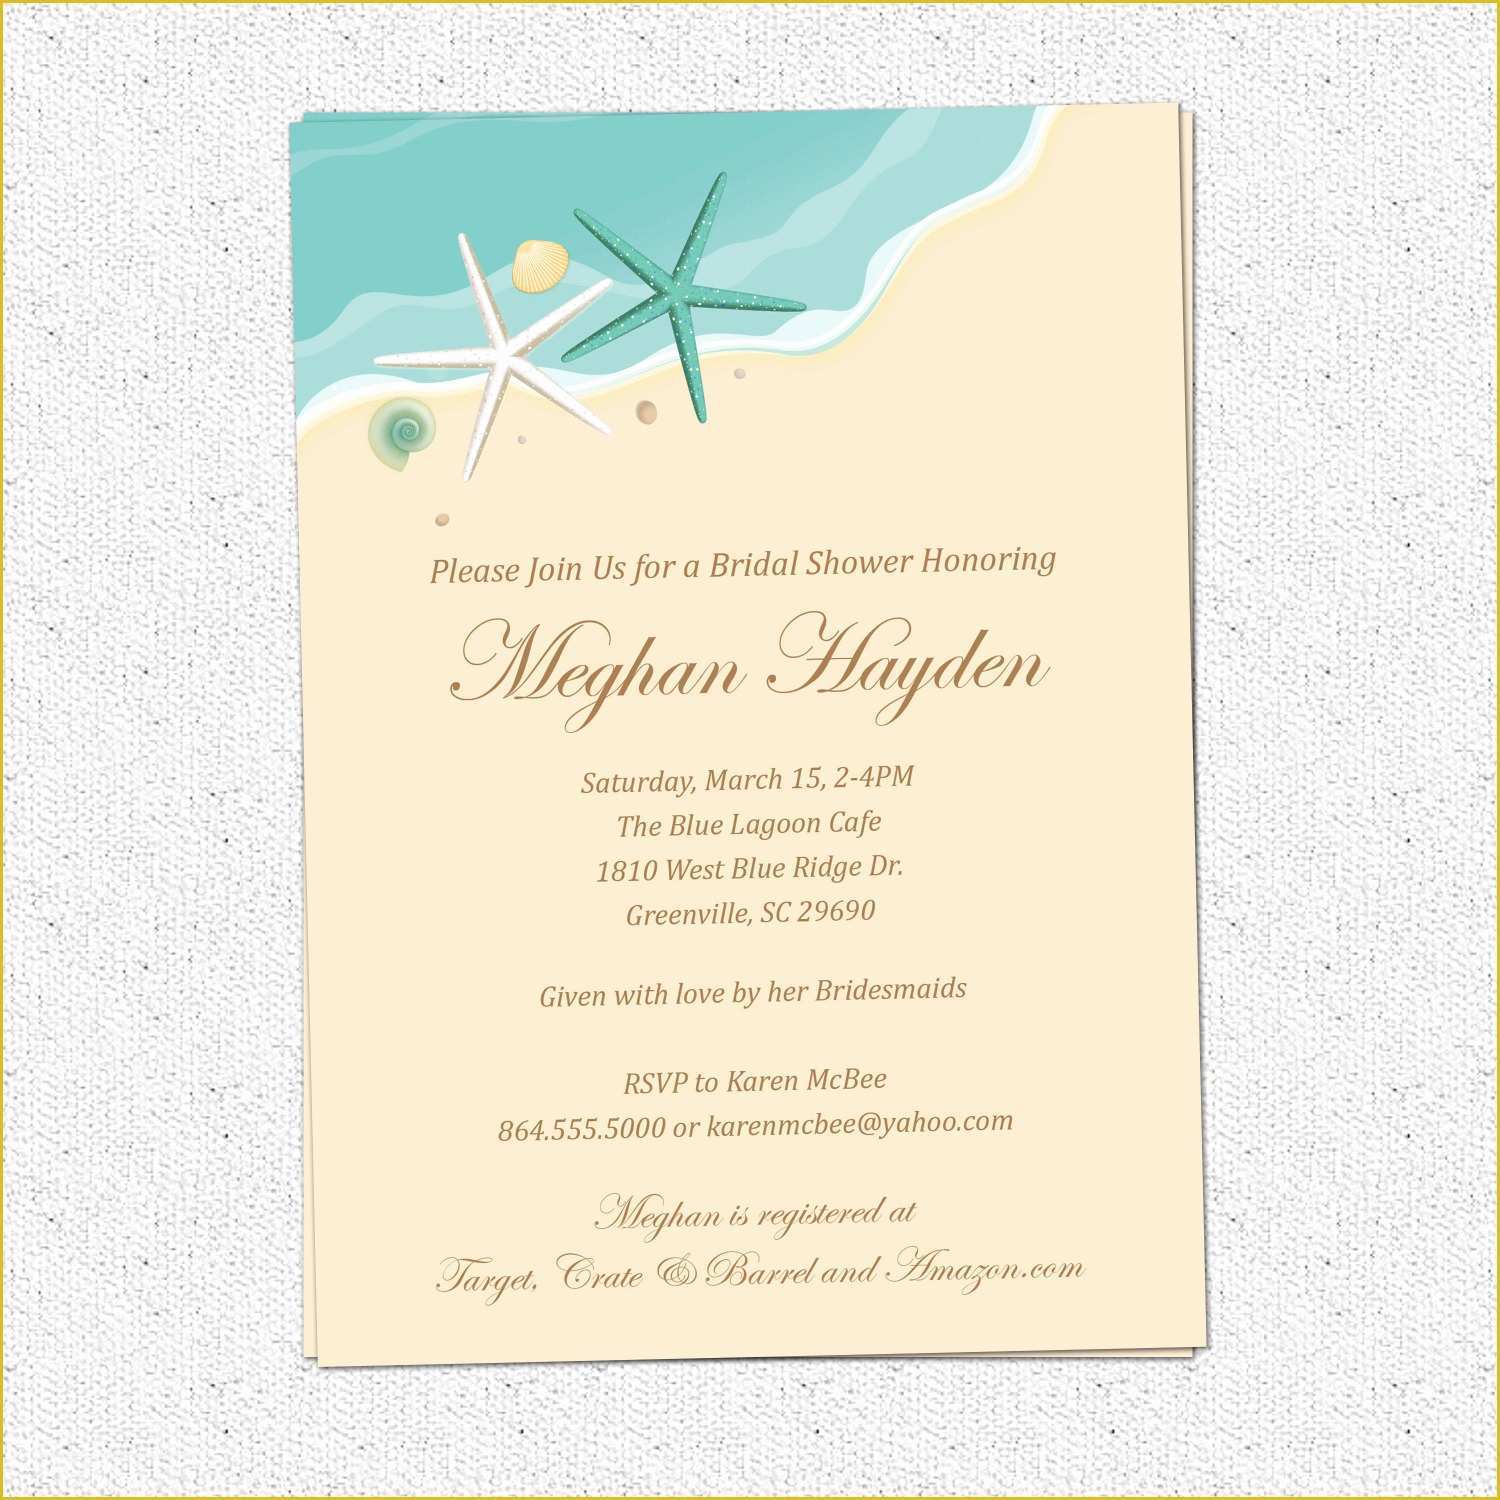 Editable Wedding Invitation Templates Free Download Of Editable Wedding Invitation Templates Free